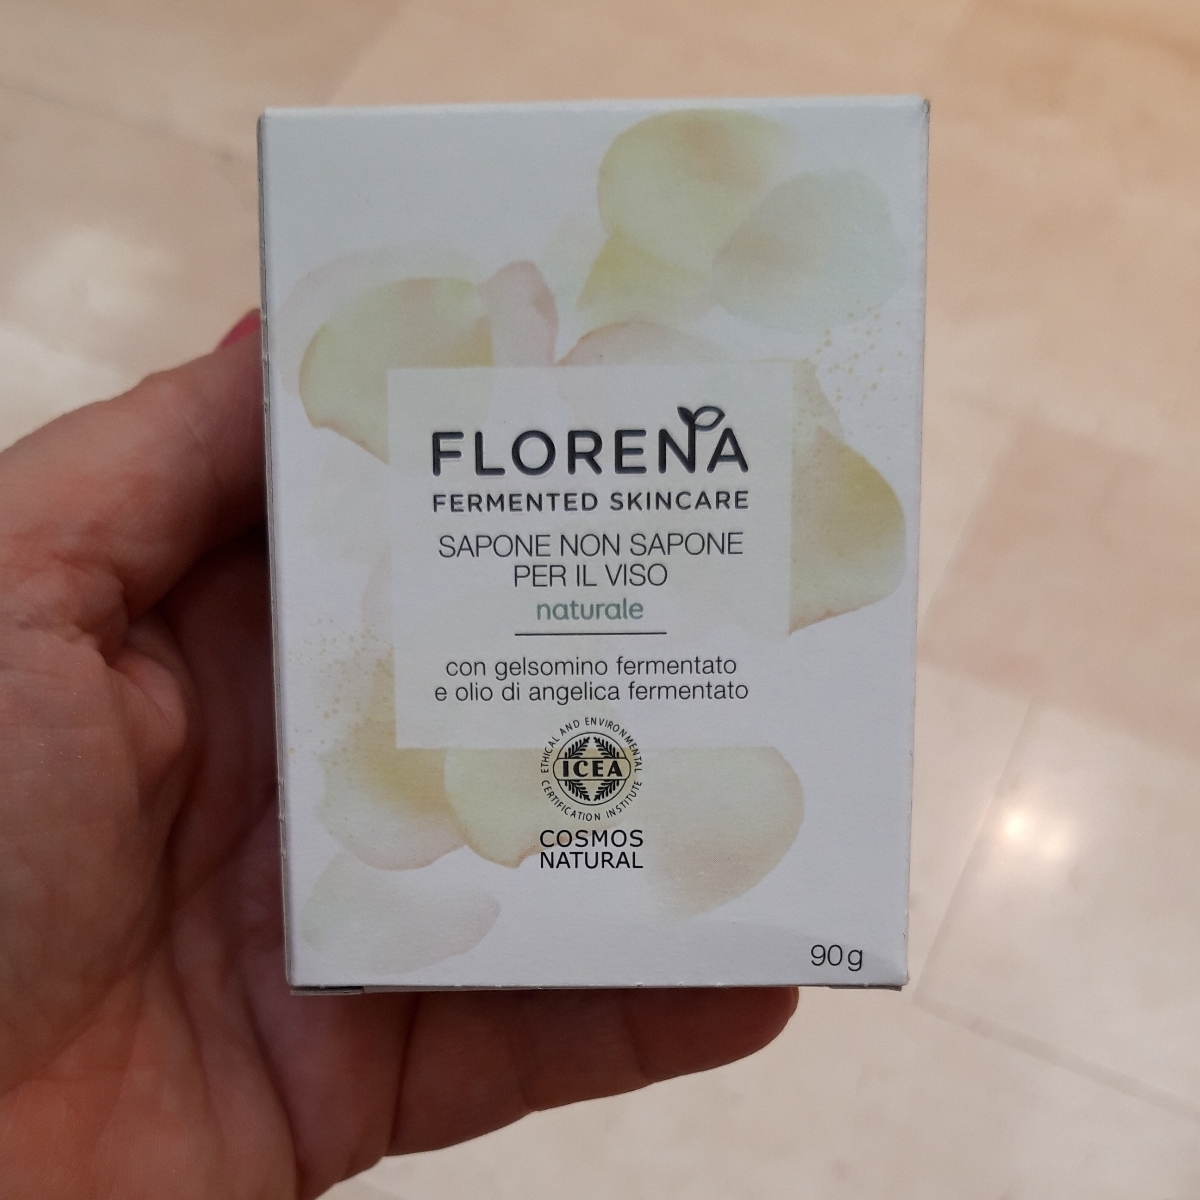 Florena Fermented Skincare Sapone non sapone per il viso Review | abillion